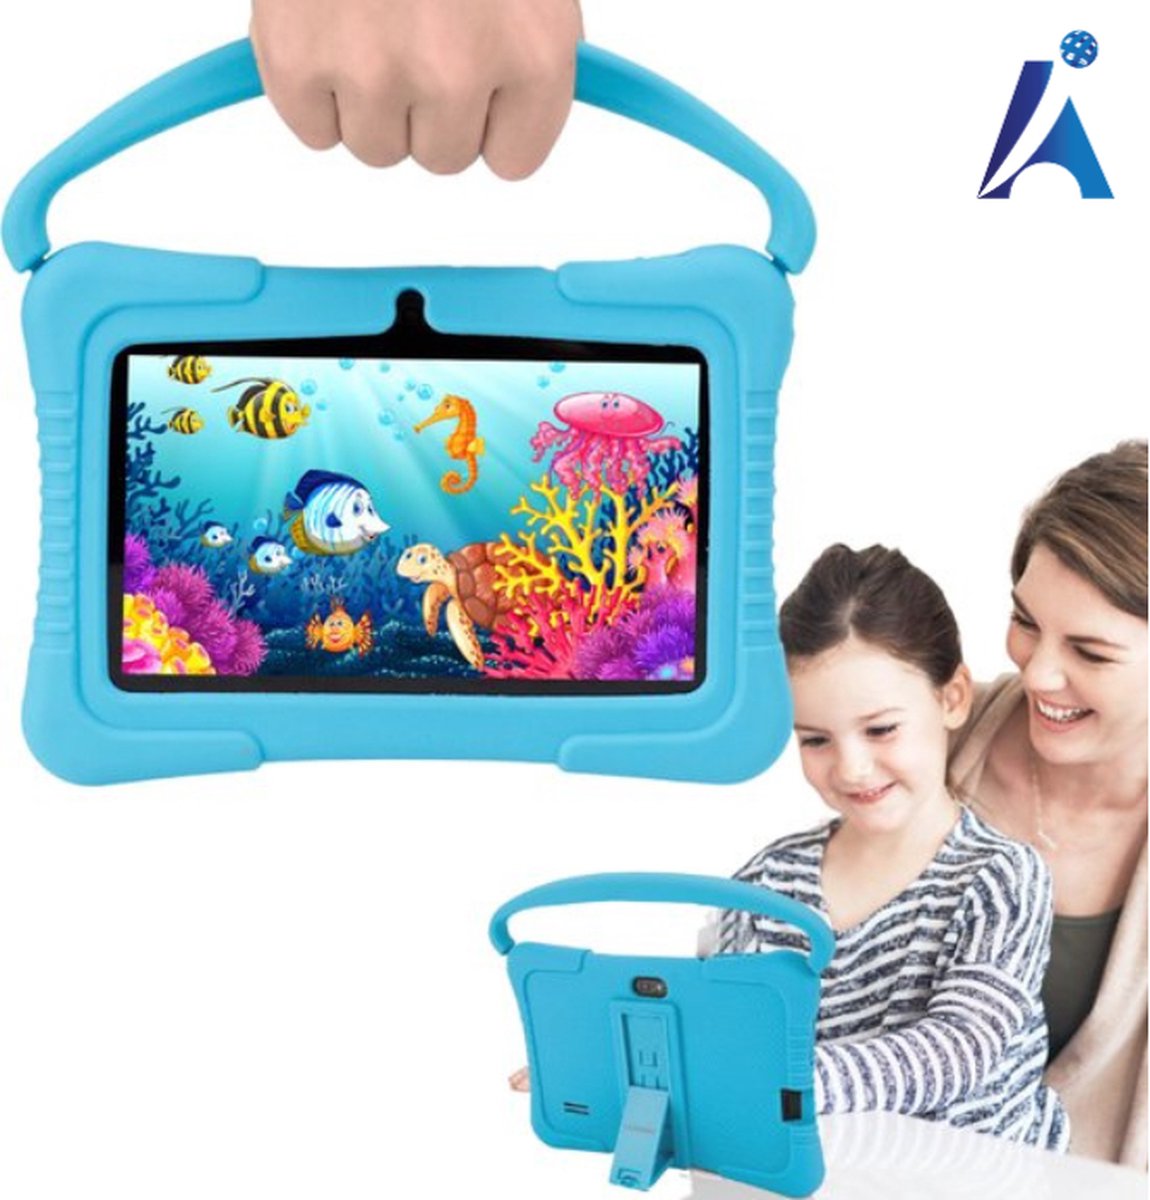 Pro Kindertablet vanaf 3 jaar - Kindertablet - Android 12.0 - 7 Inch - 2023 Model - 32GB - Kinder Tablet - Tablet Voor Kinderen - Tablet Kinderen - Tablet Kids - Gratis Beschermende Hoes - Ouderlijk Toezicht